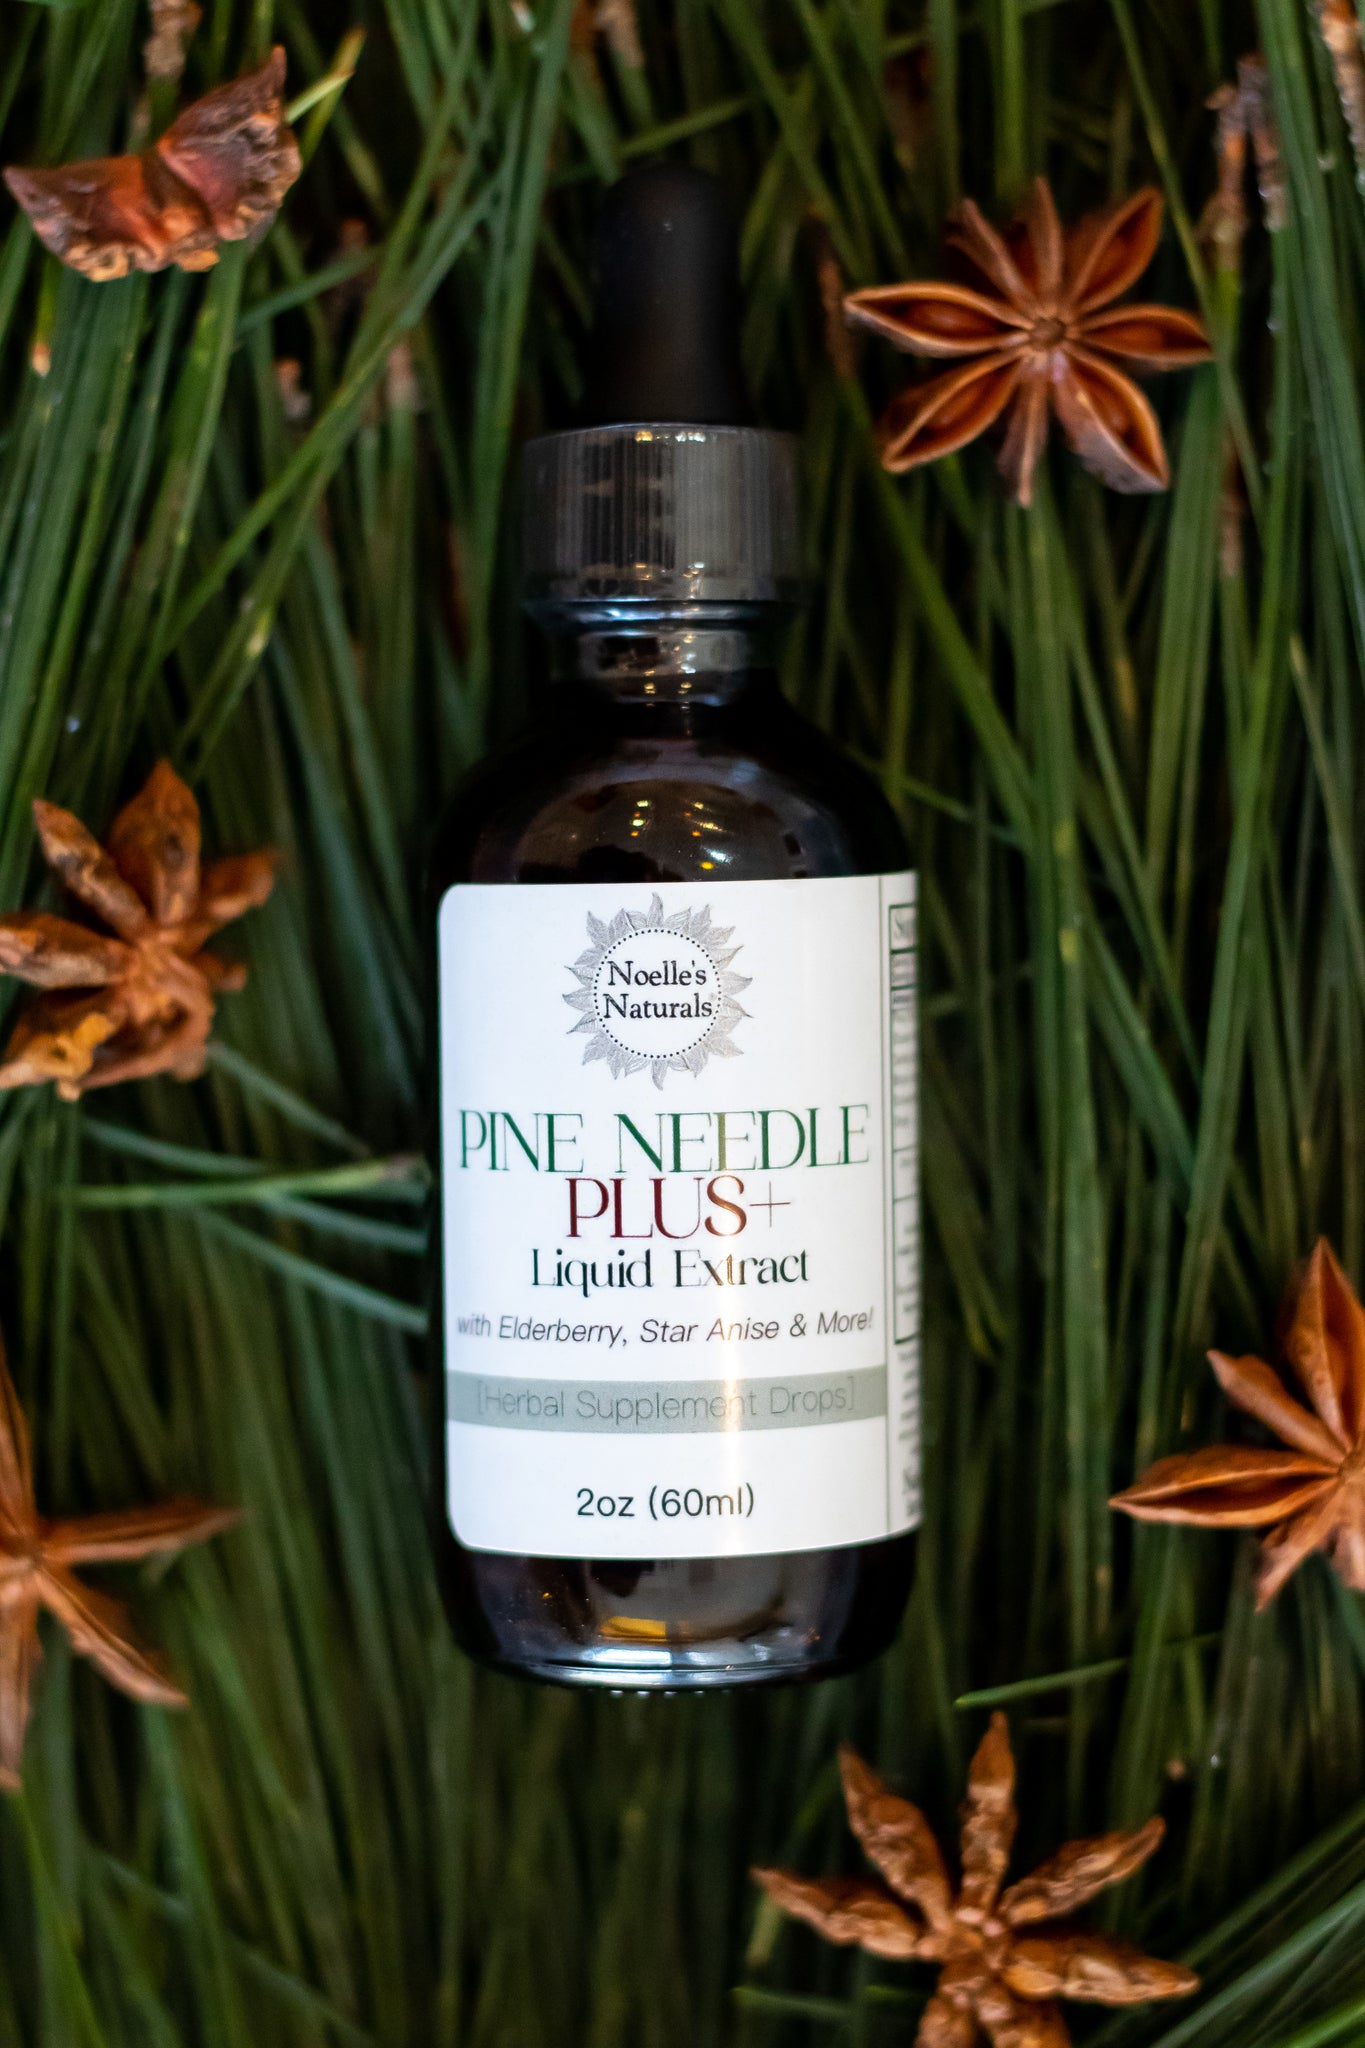 Pine Needle Plus+ Herbal Extract Drops